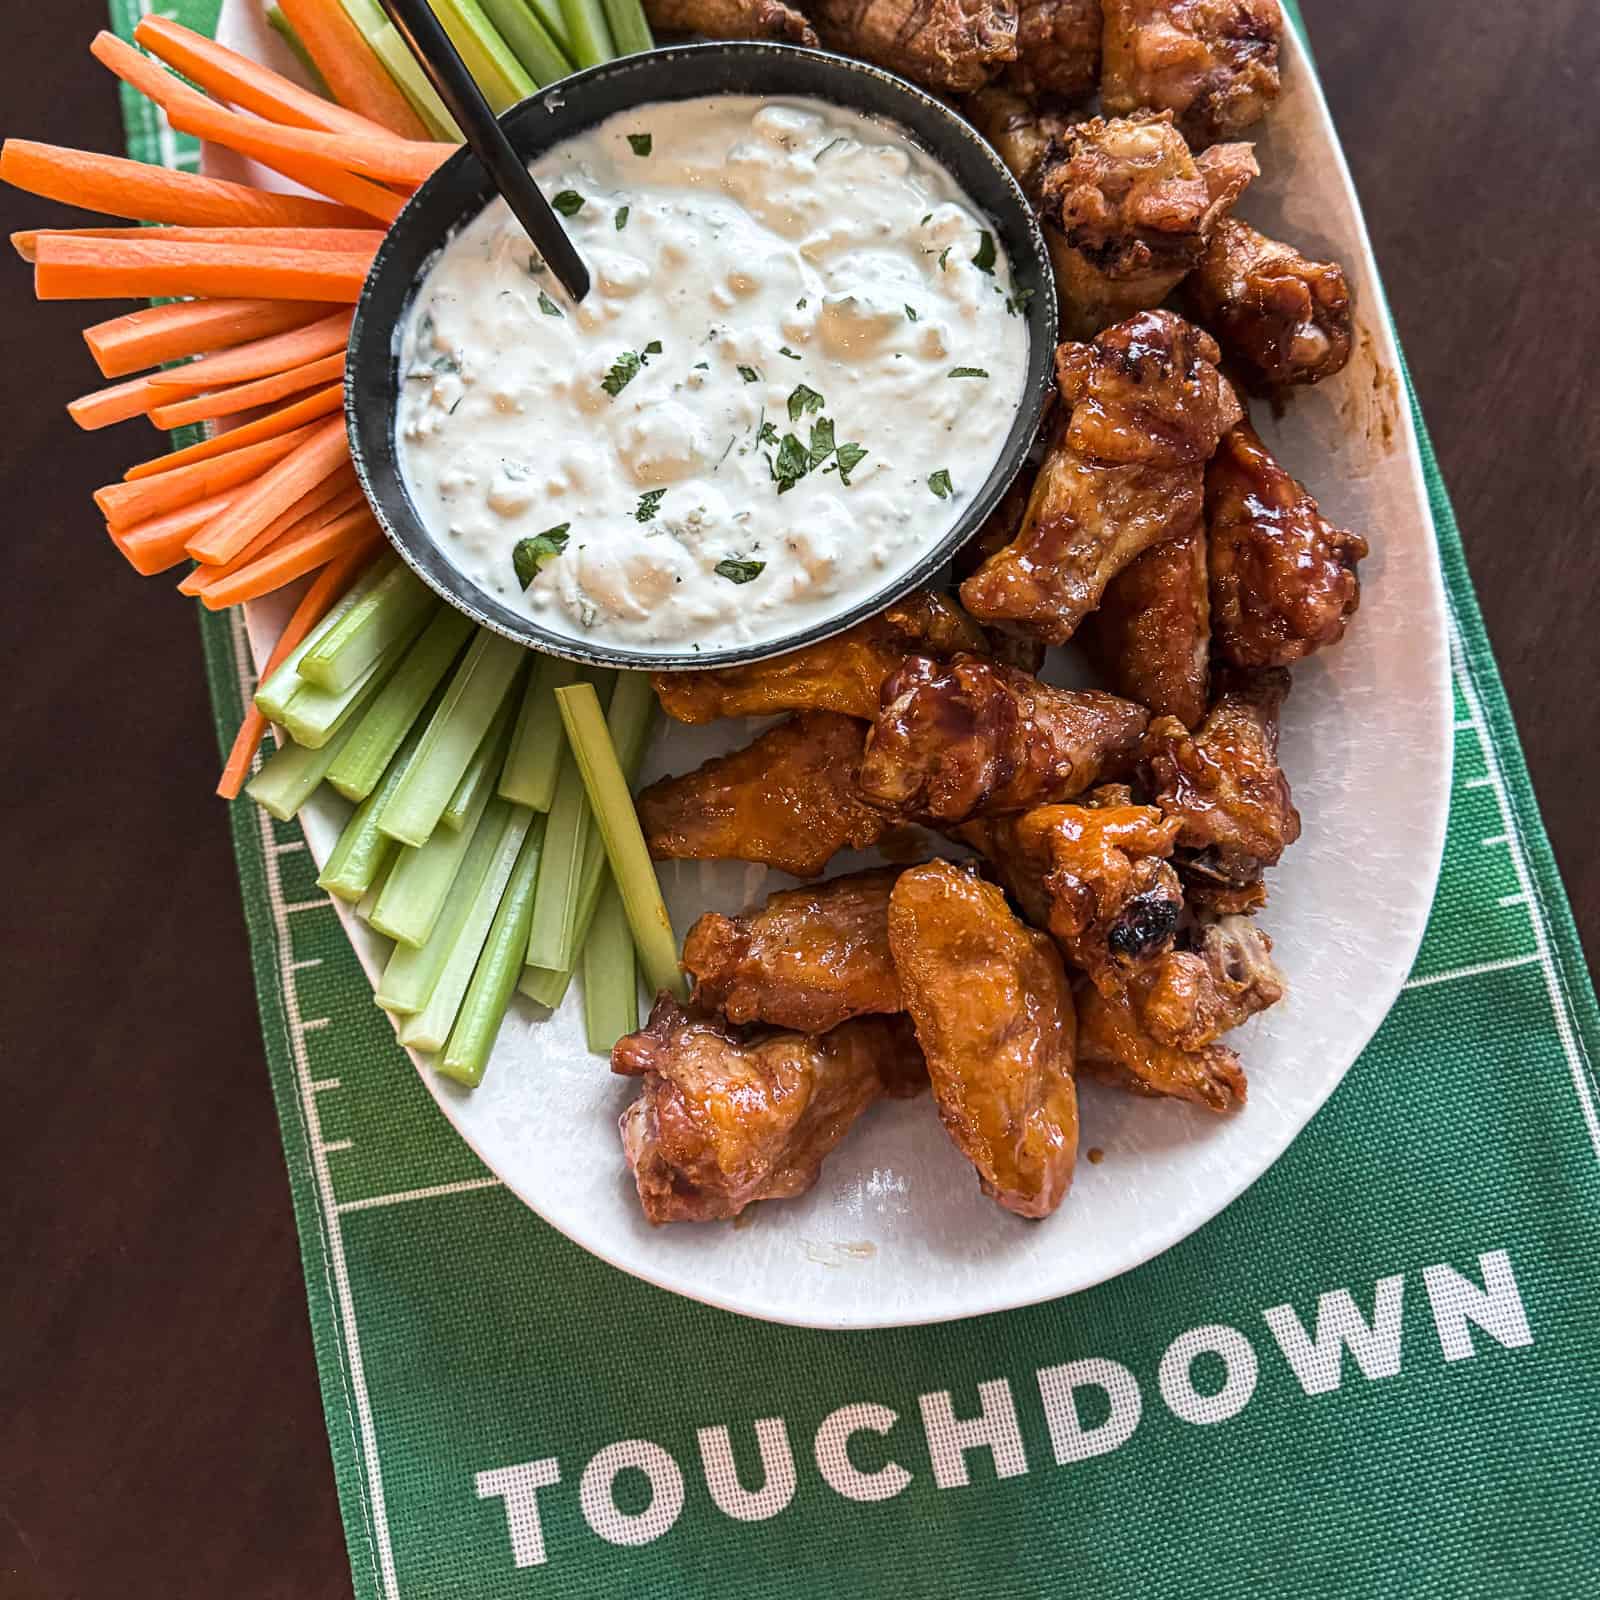 Platter of Super Bowl Food on Football Table Runner